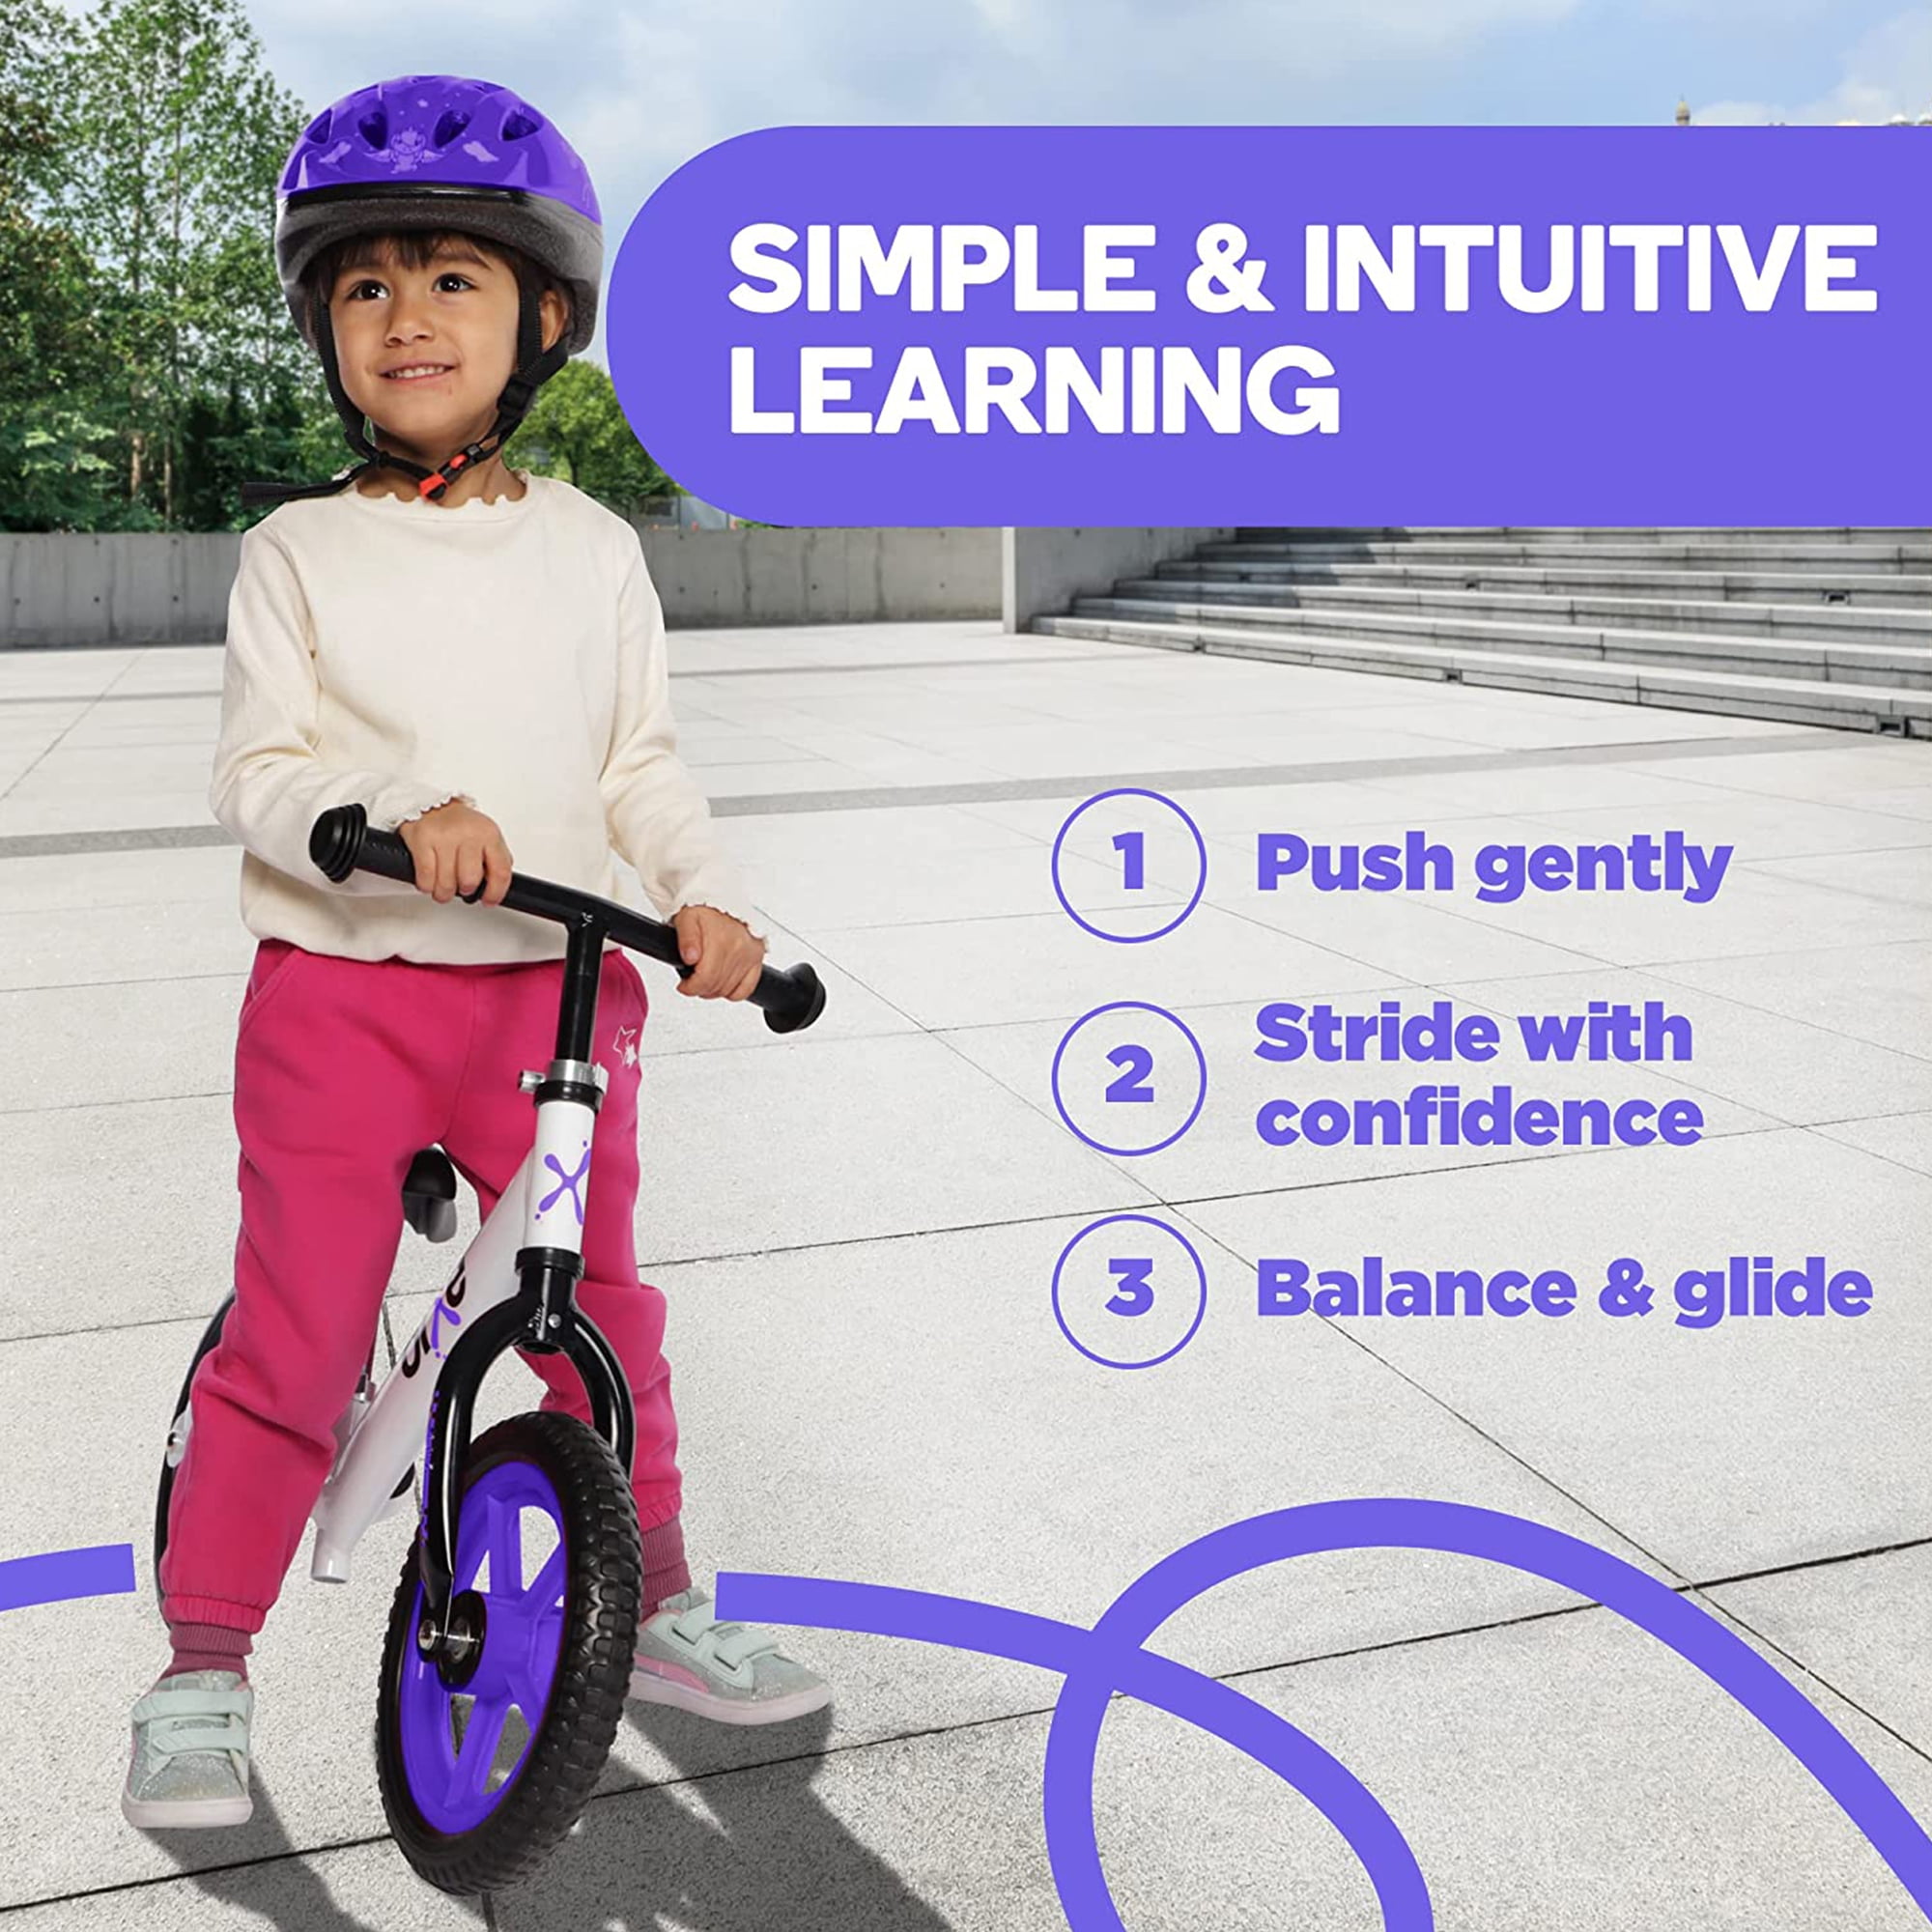 Bixe Aluminum Toddler Balance Bike Lightweight 12” No-Pedal Training Bike for Kids, Green